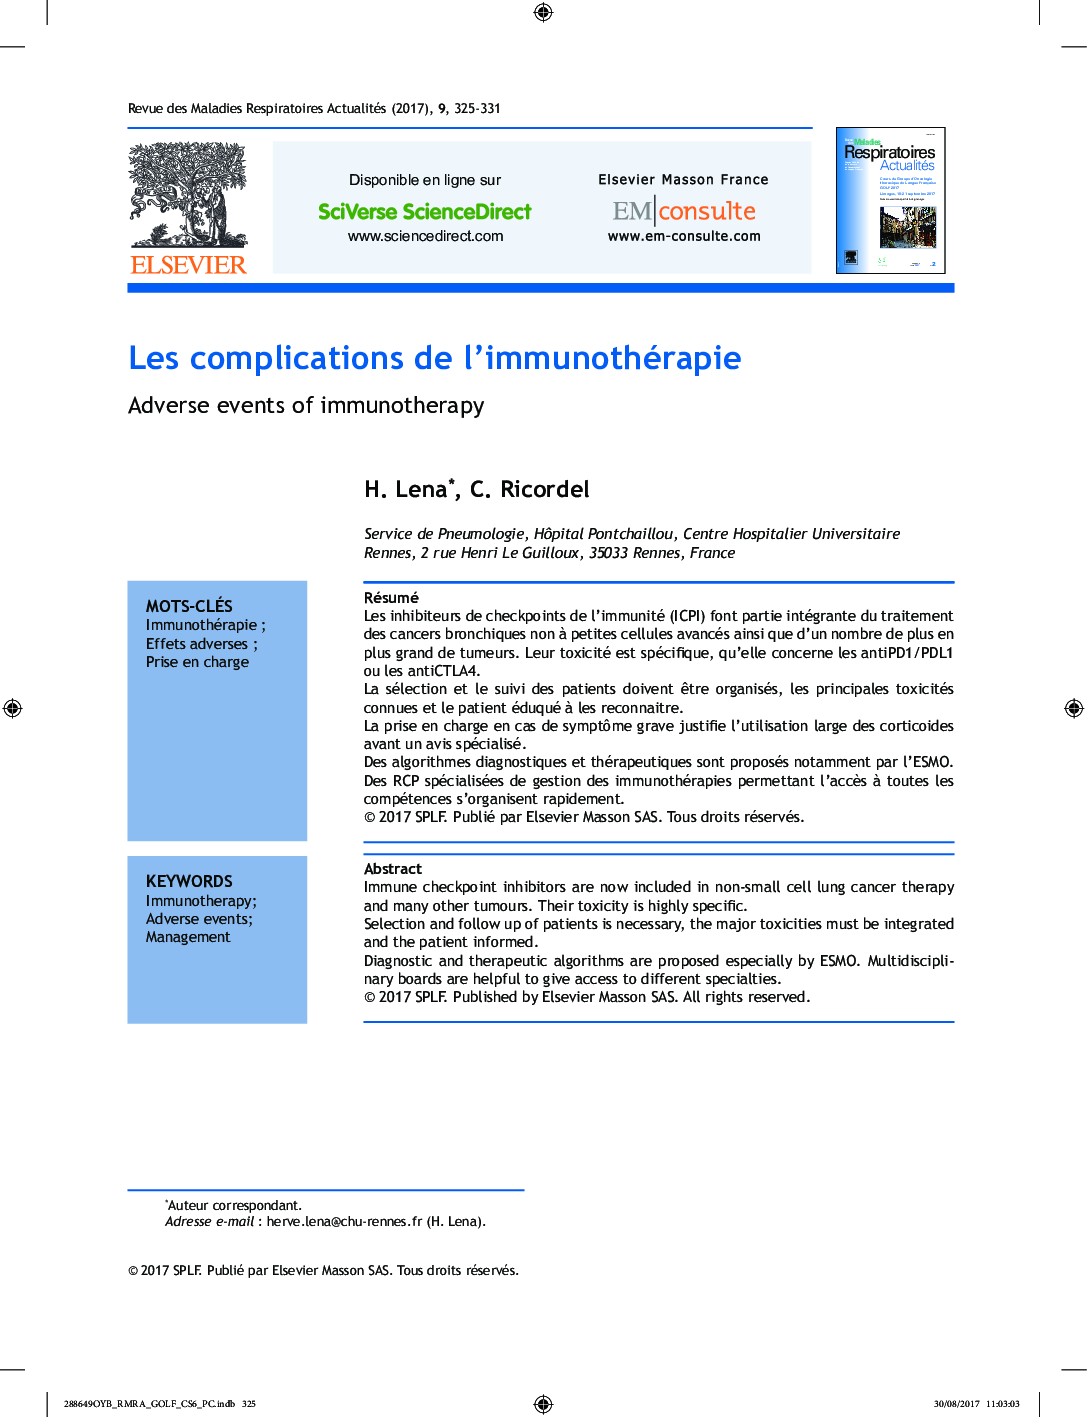 Les complications de l'immunothérapie